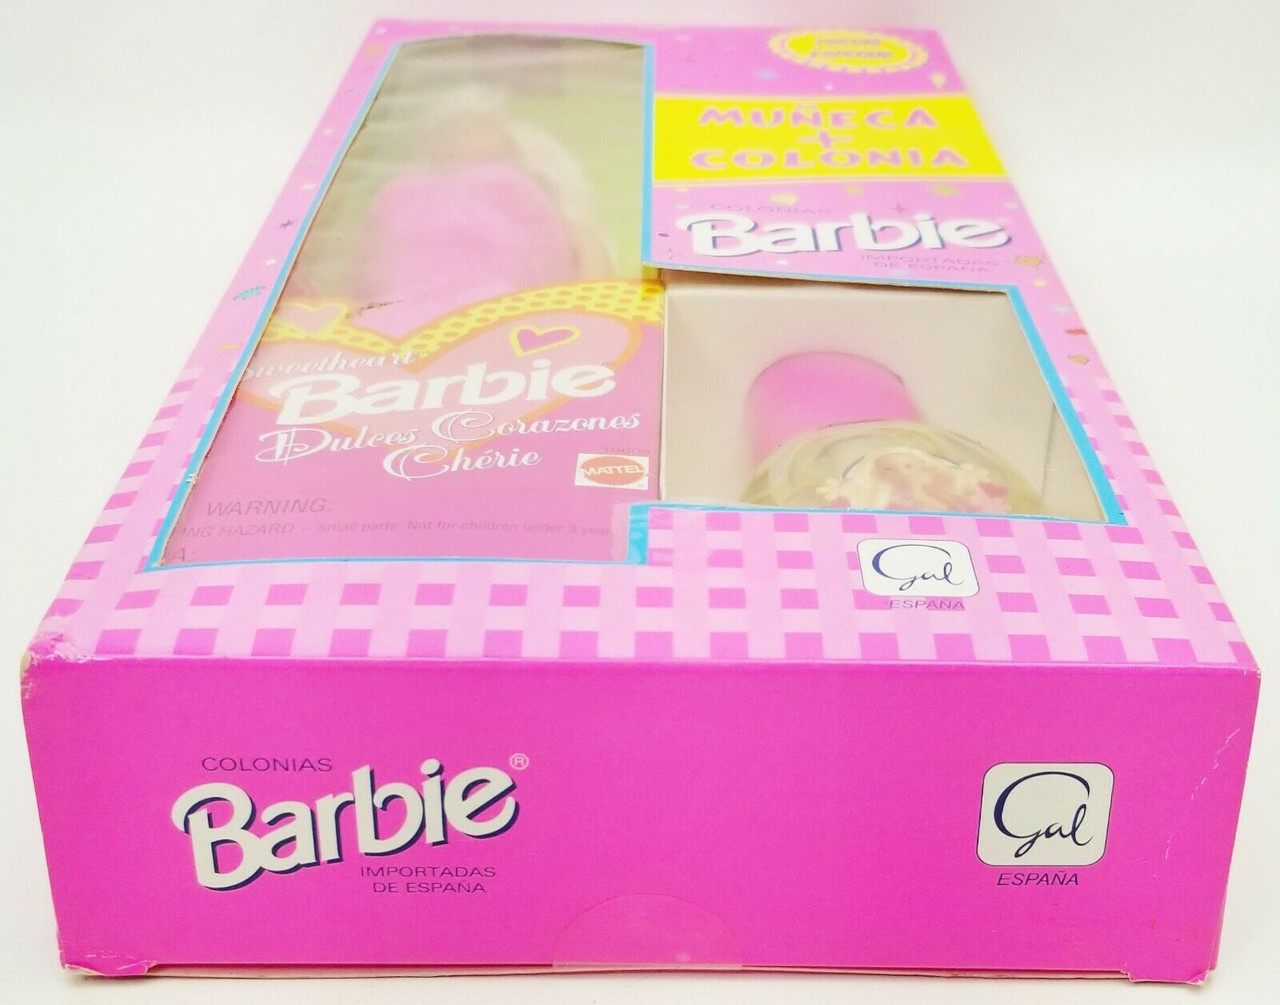 Vintage Mattel 1997 Sweetheart Barbie Doll 18608 Pink Heart